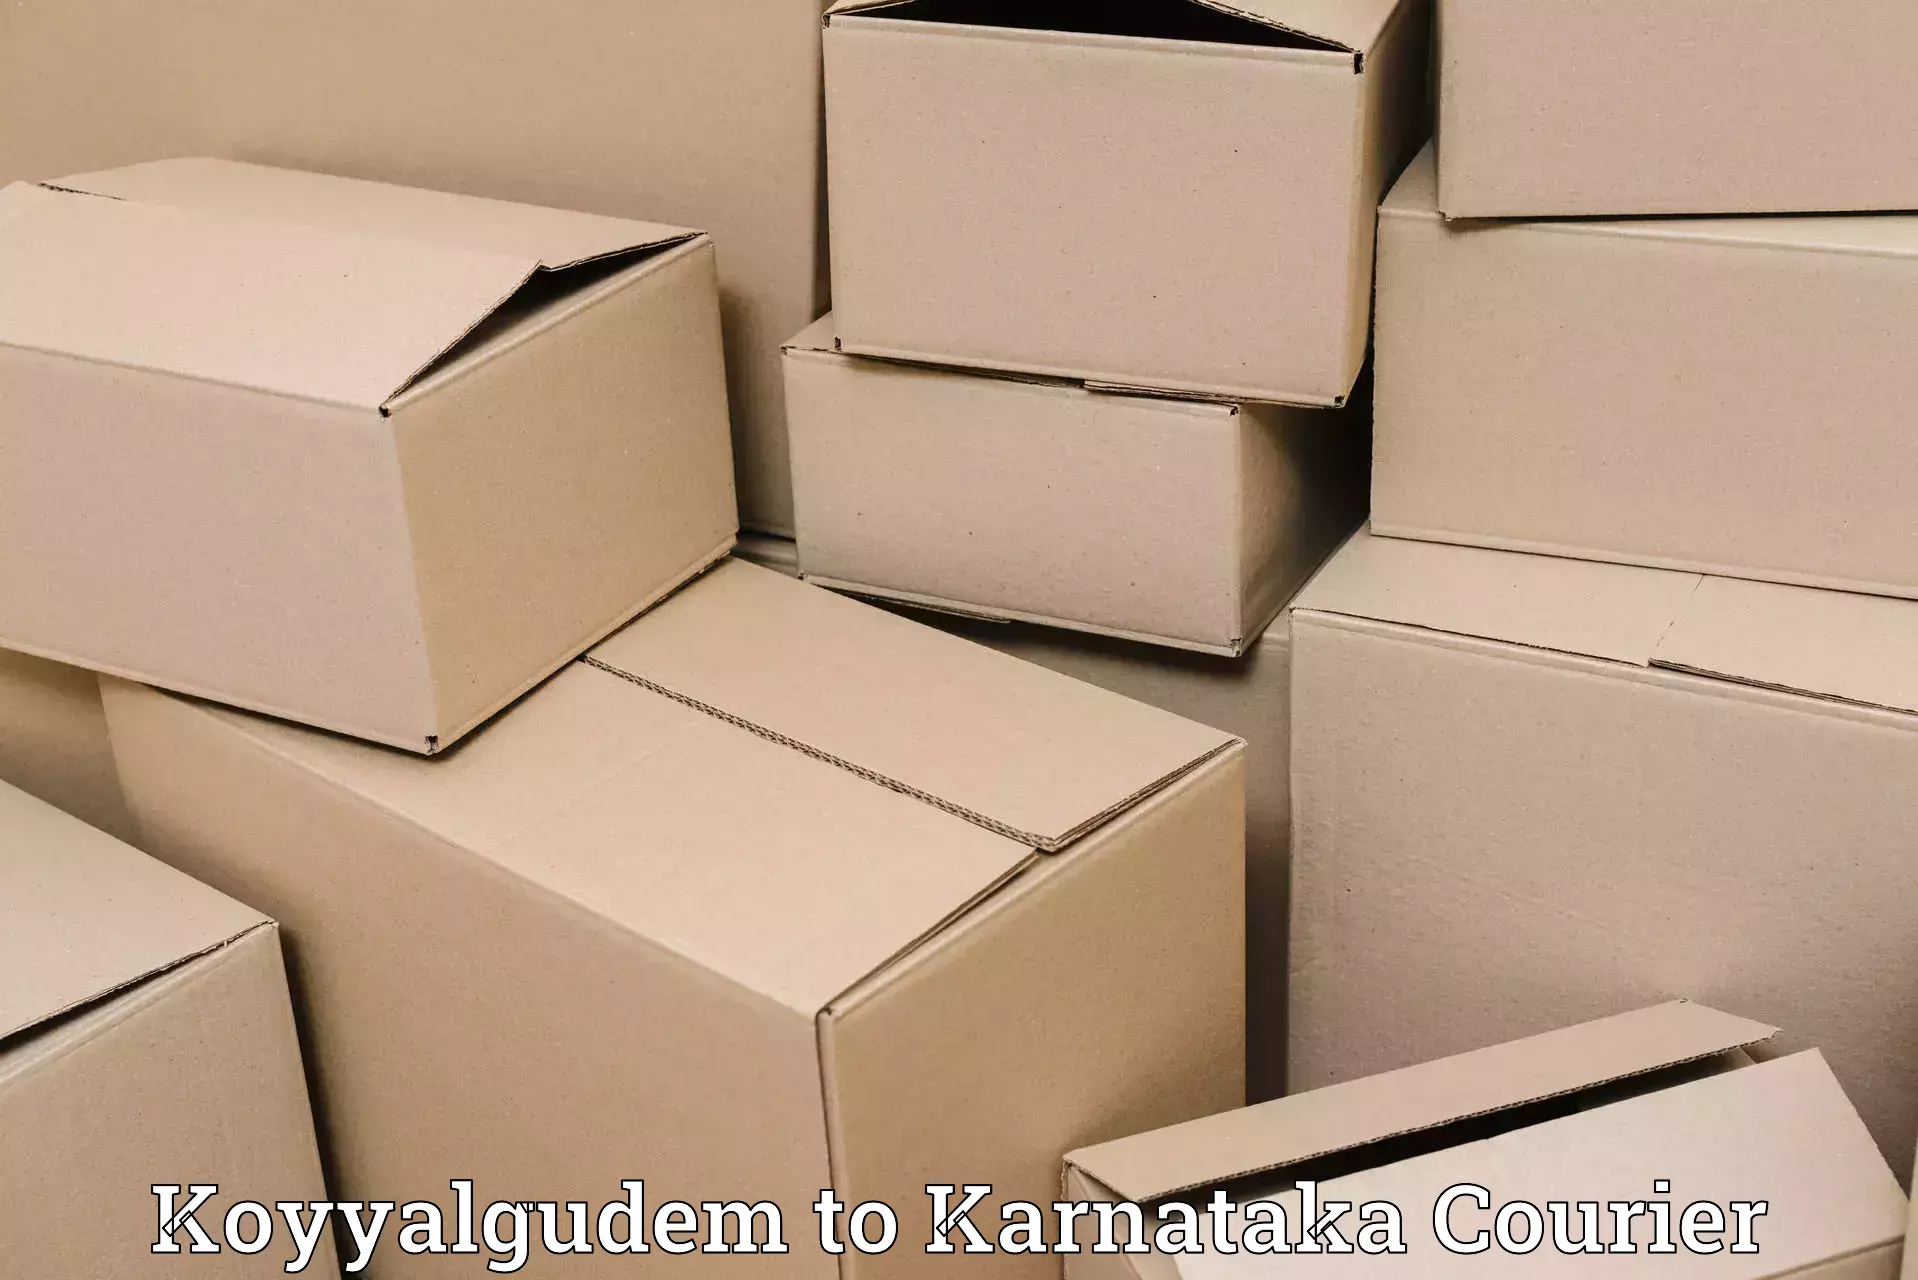 Smart parcel delivery Koyyalgudem to Hoovina Hadagali